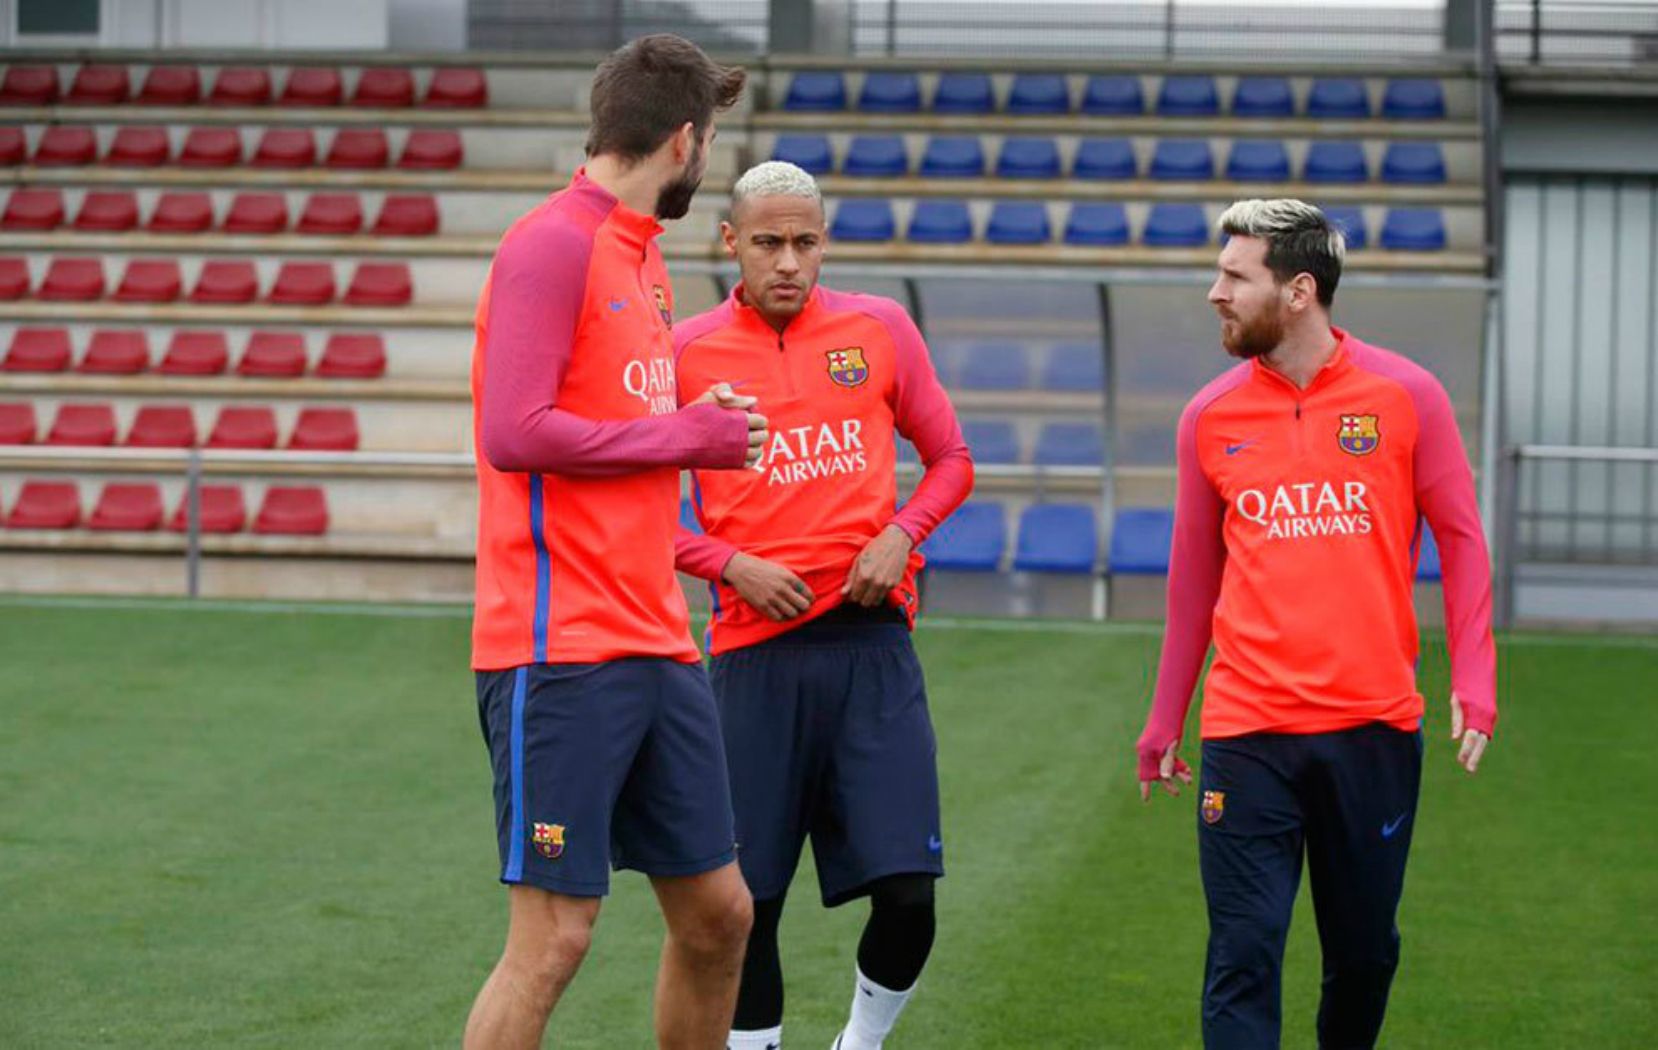 Messi, recuperat, ja s'entrena amb el Barça